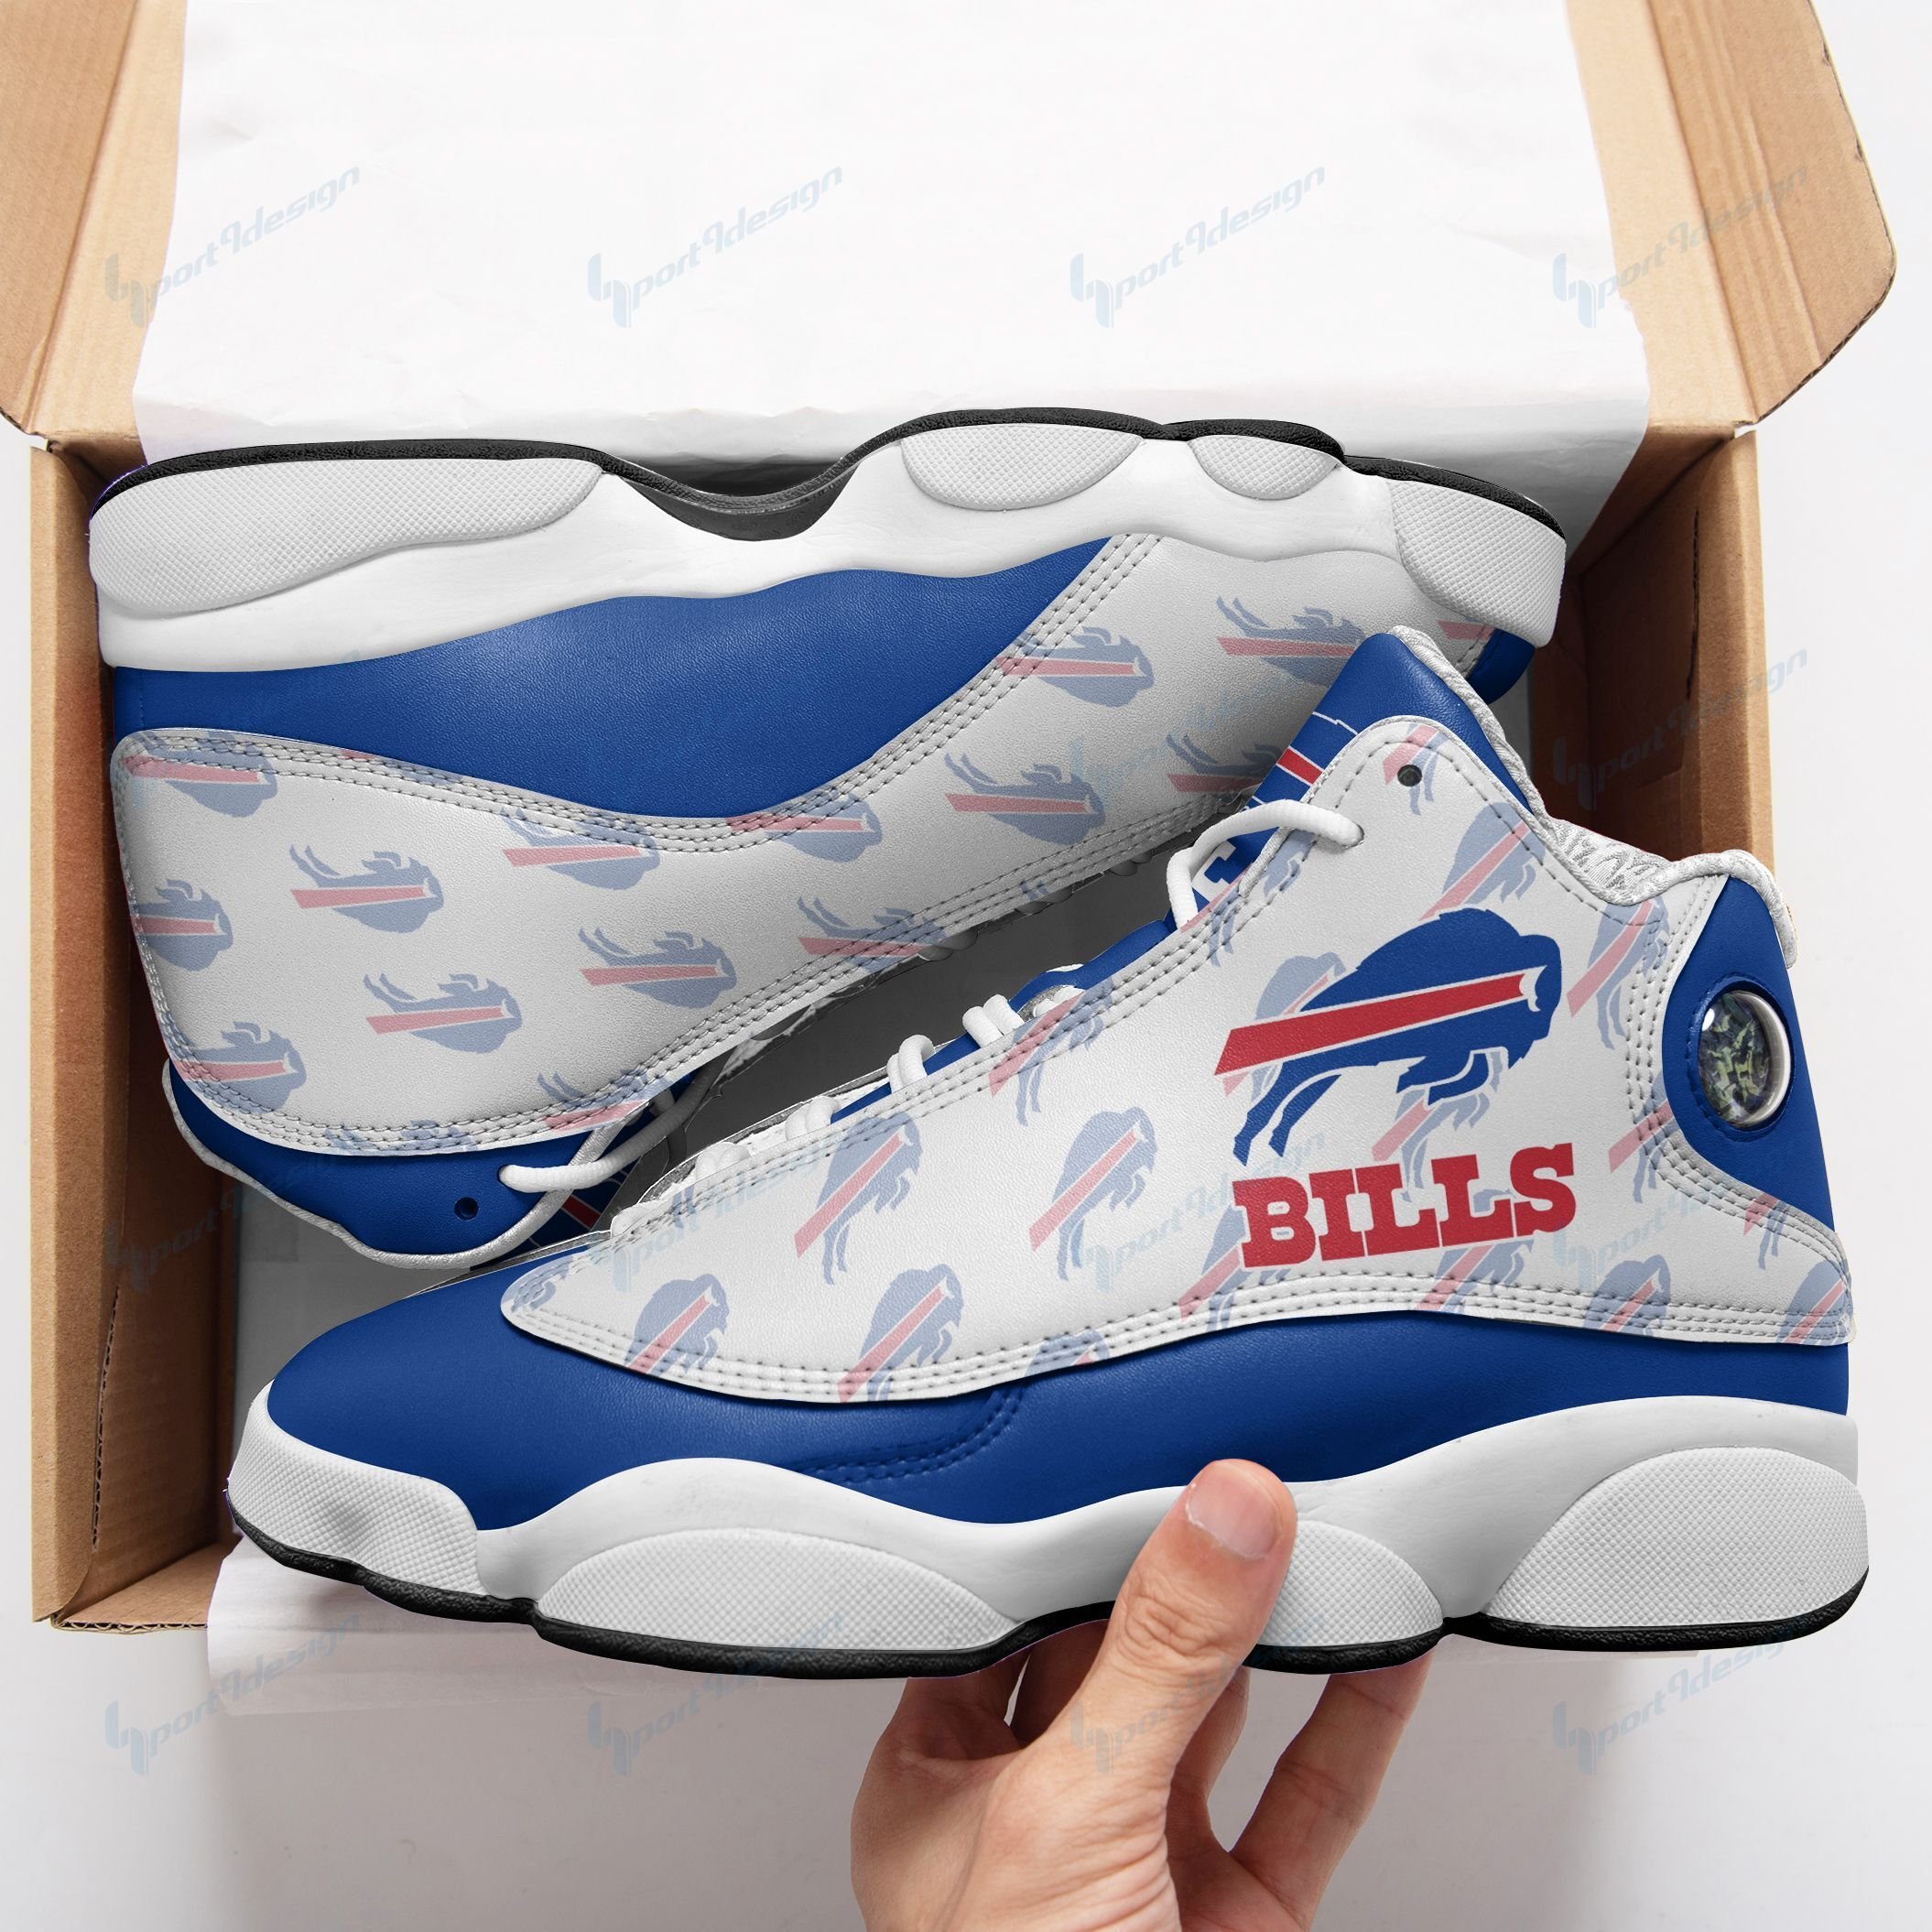 Buffalo Bills Air JD13 Sneakers 352